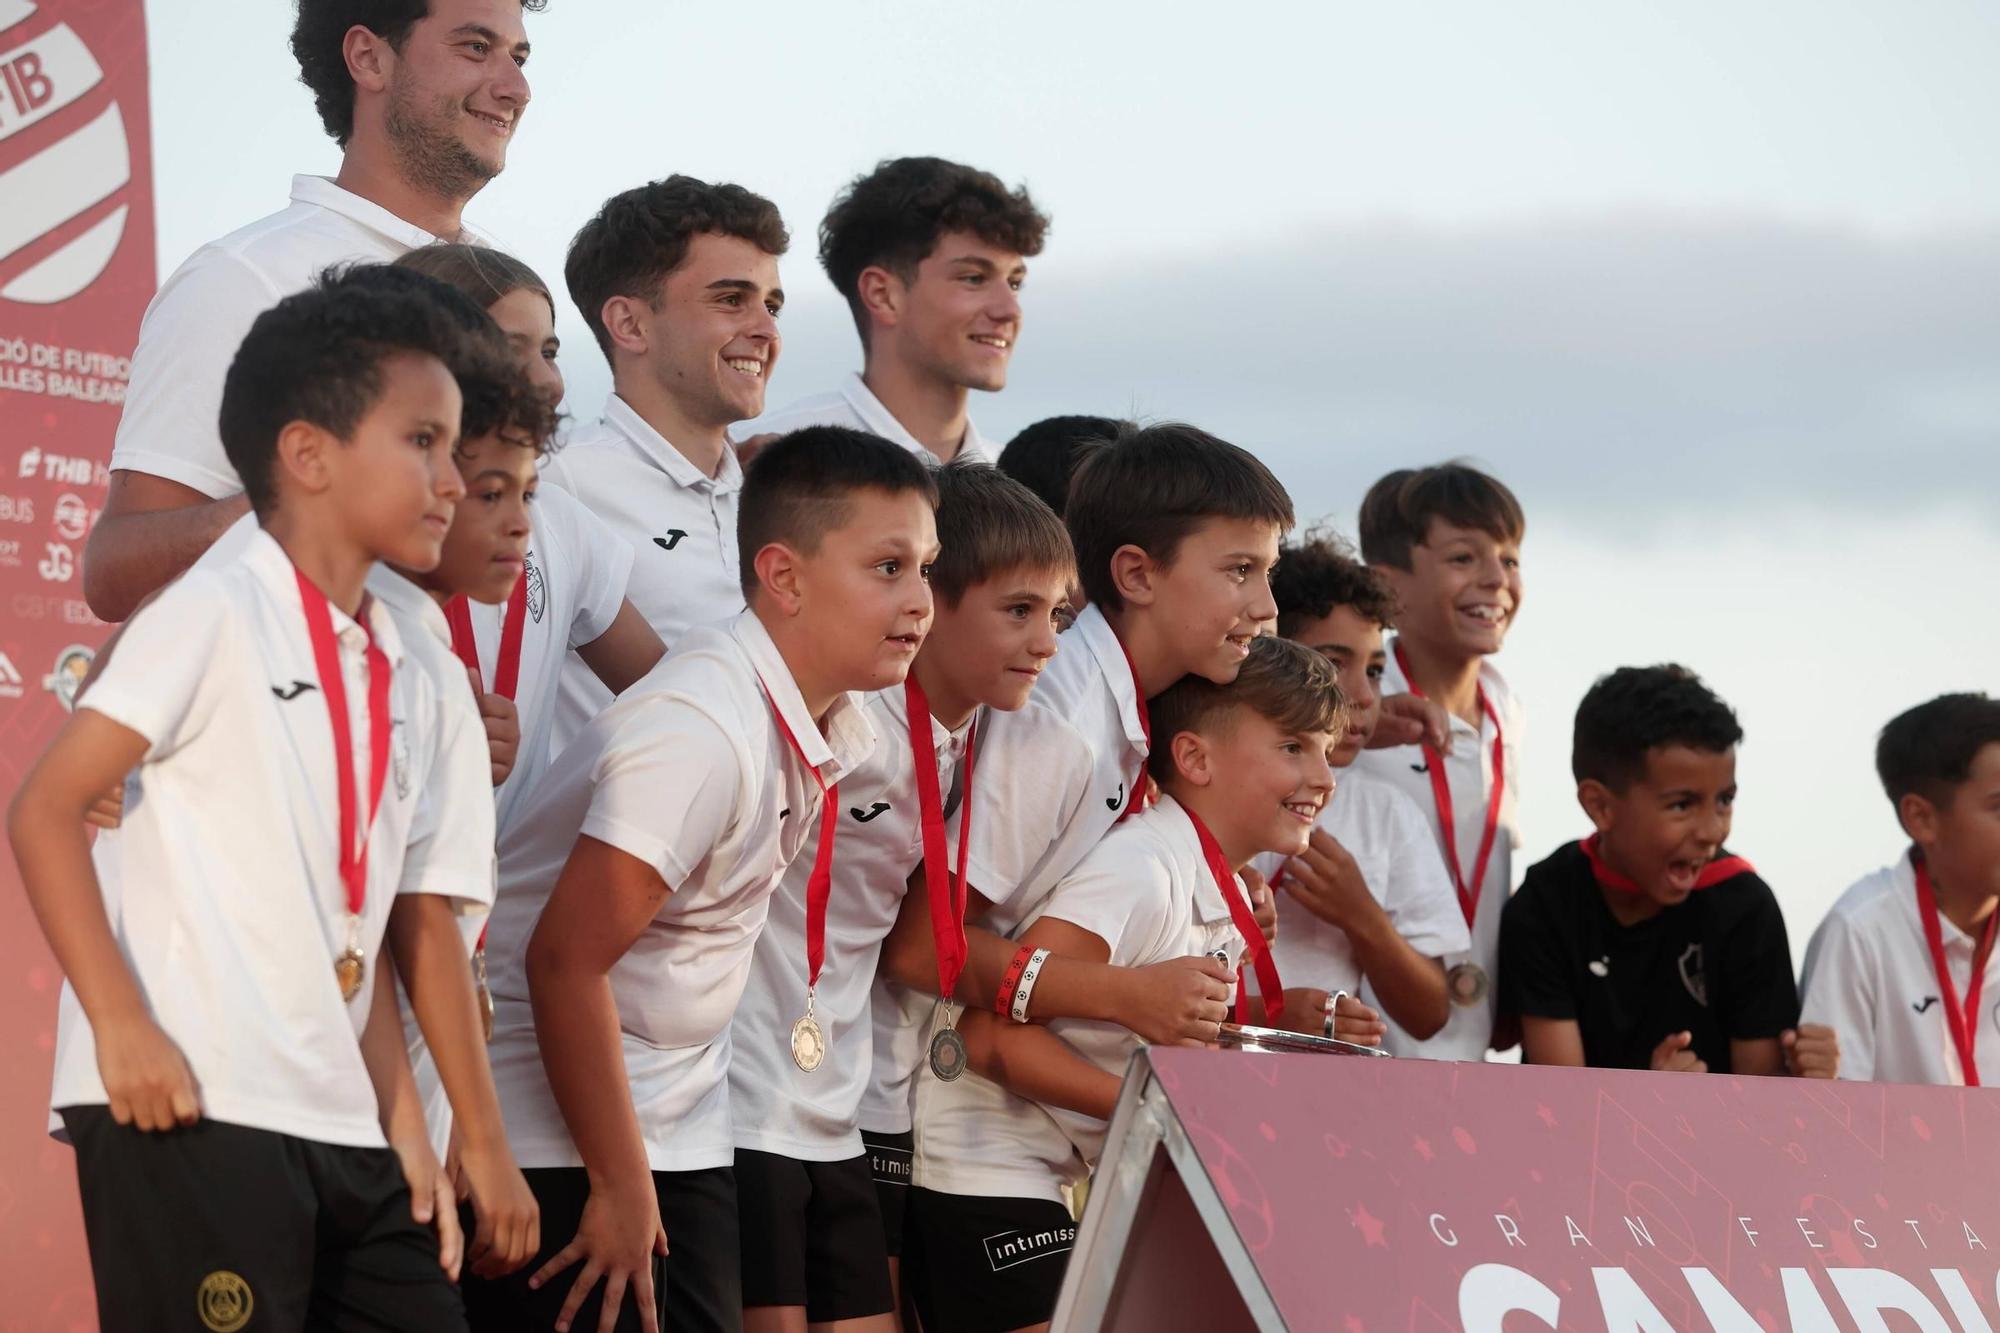 Gran Festa dels Campions del futbol base de Mallorca